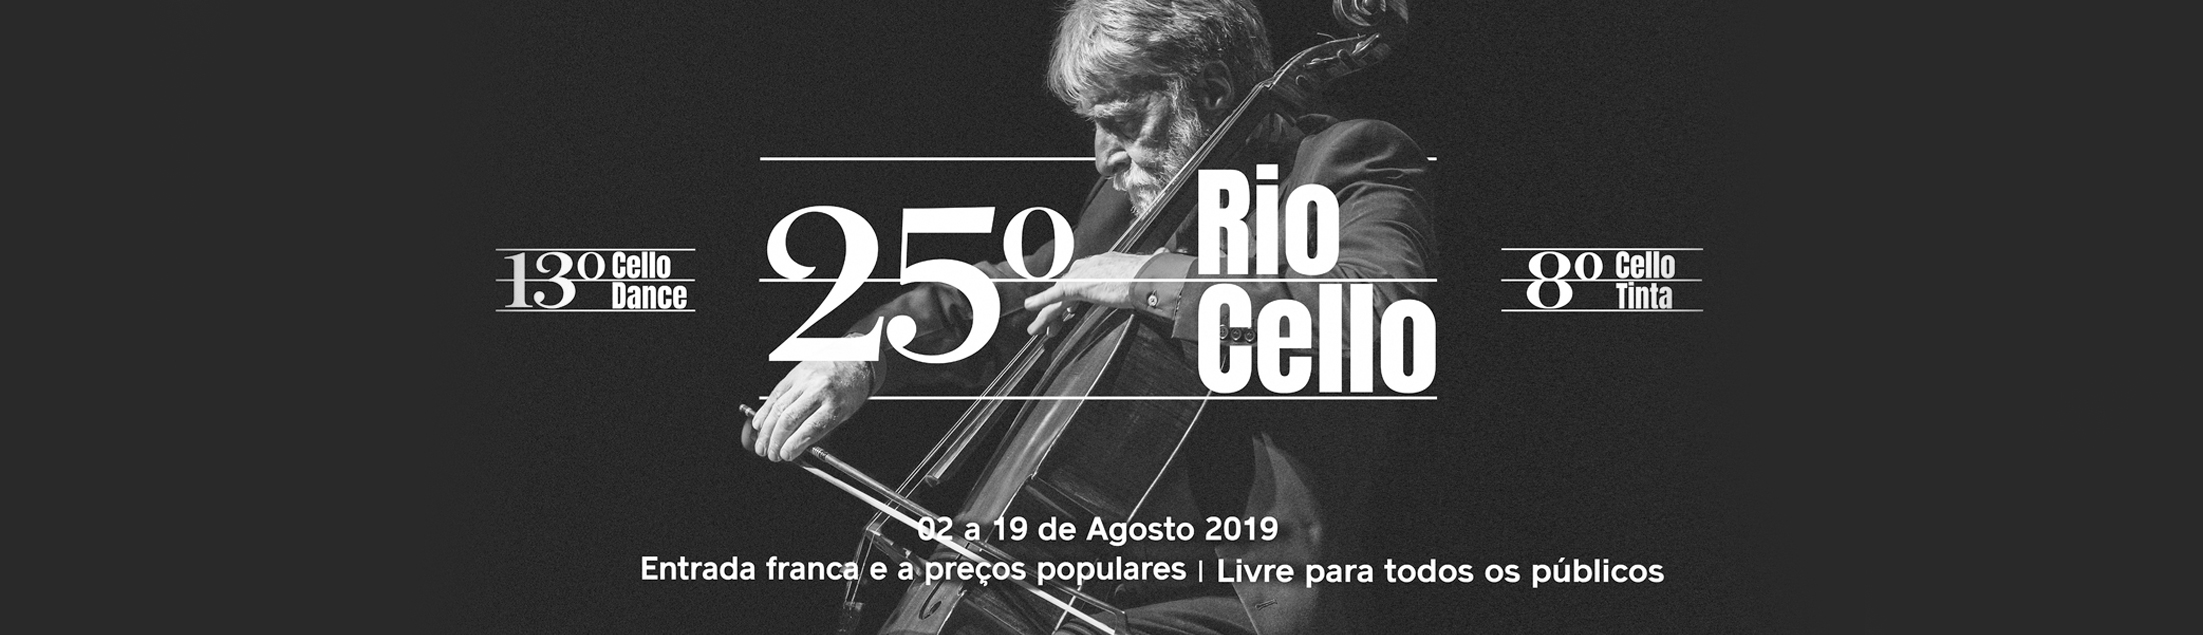 Rio Cello celebra seus 25 anos e volta a ocupar os principais espaços culturais da cidade